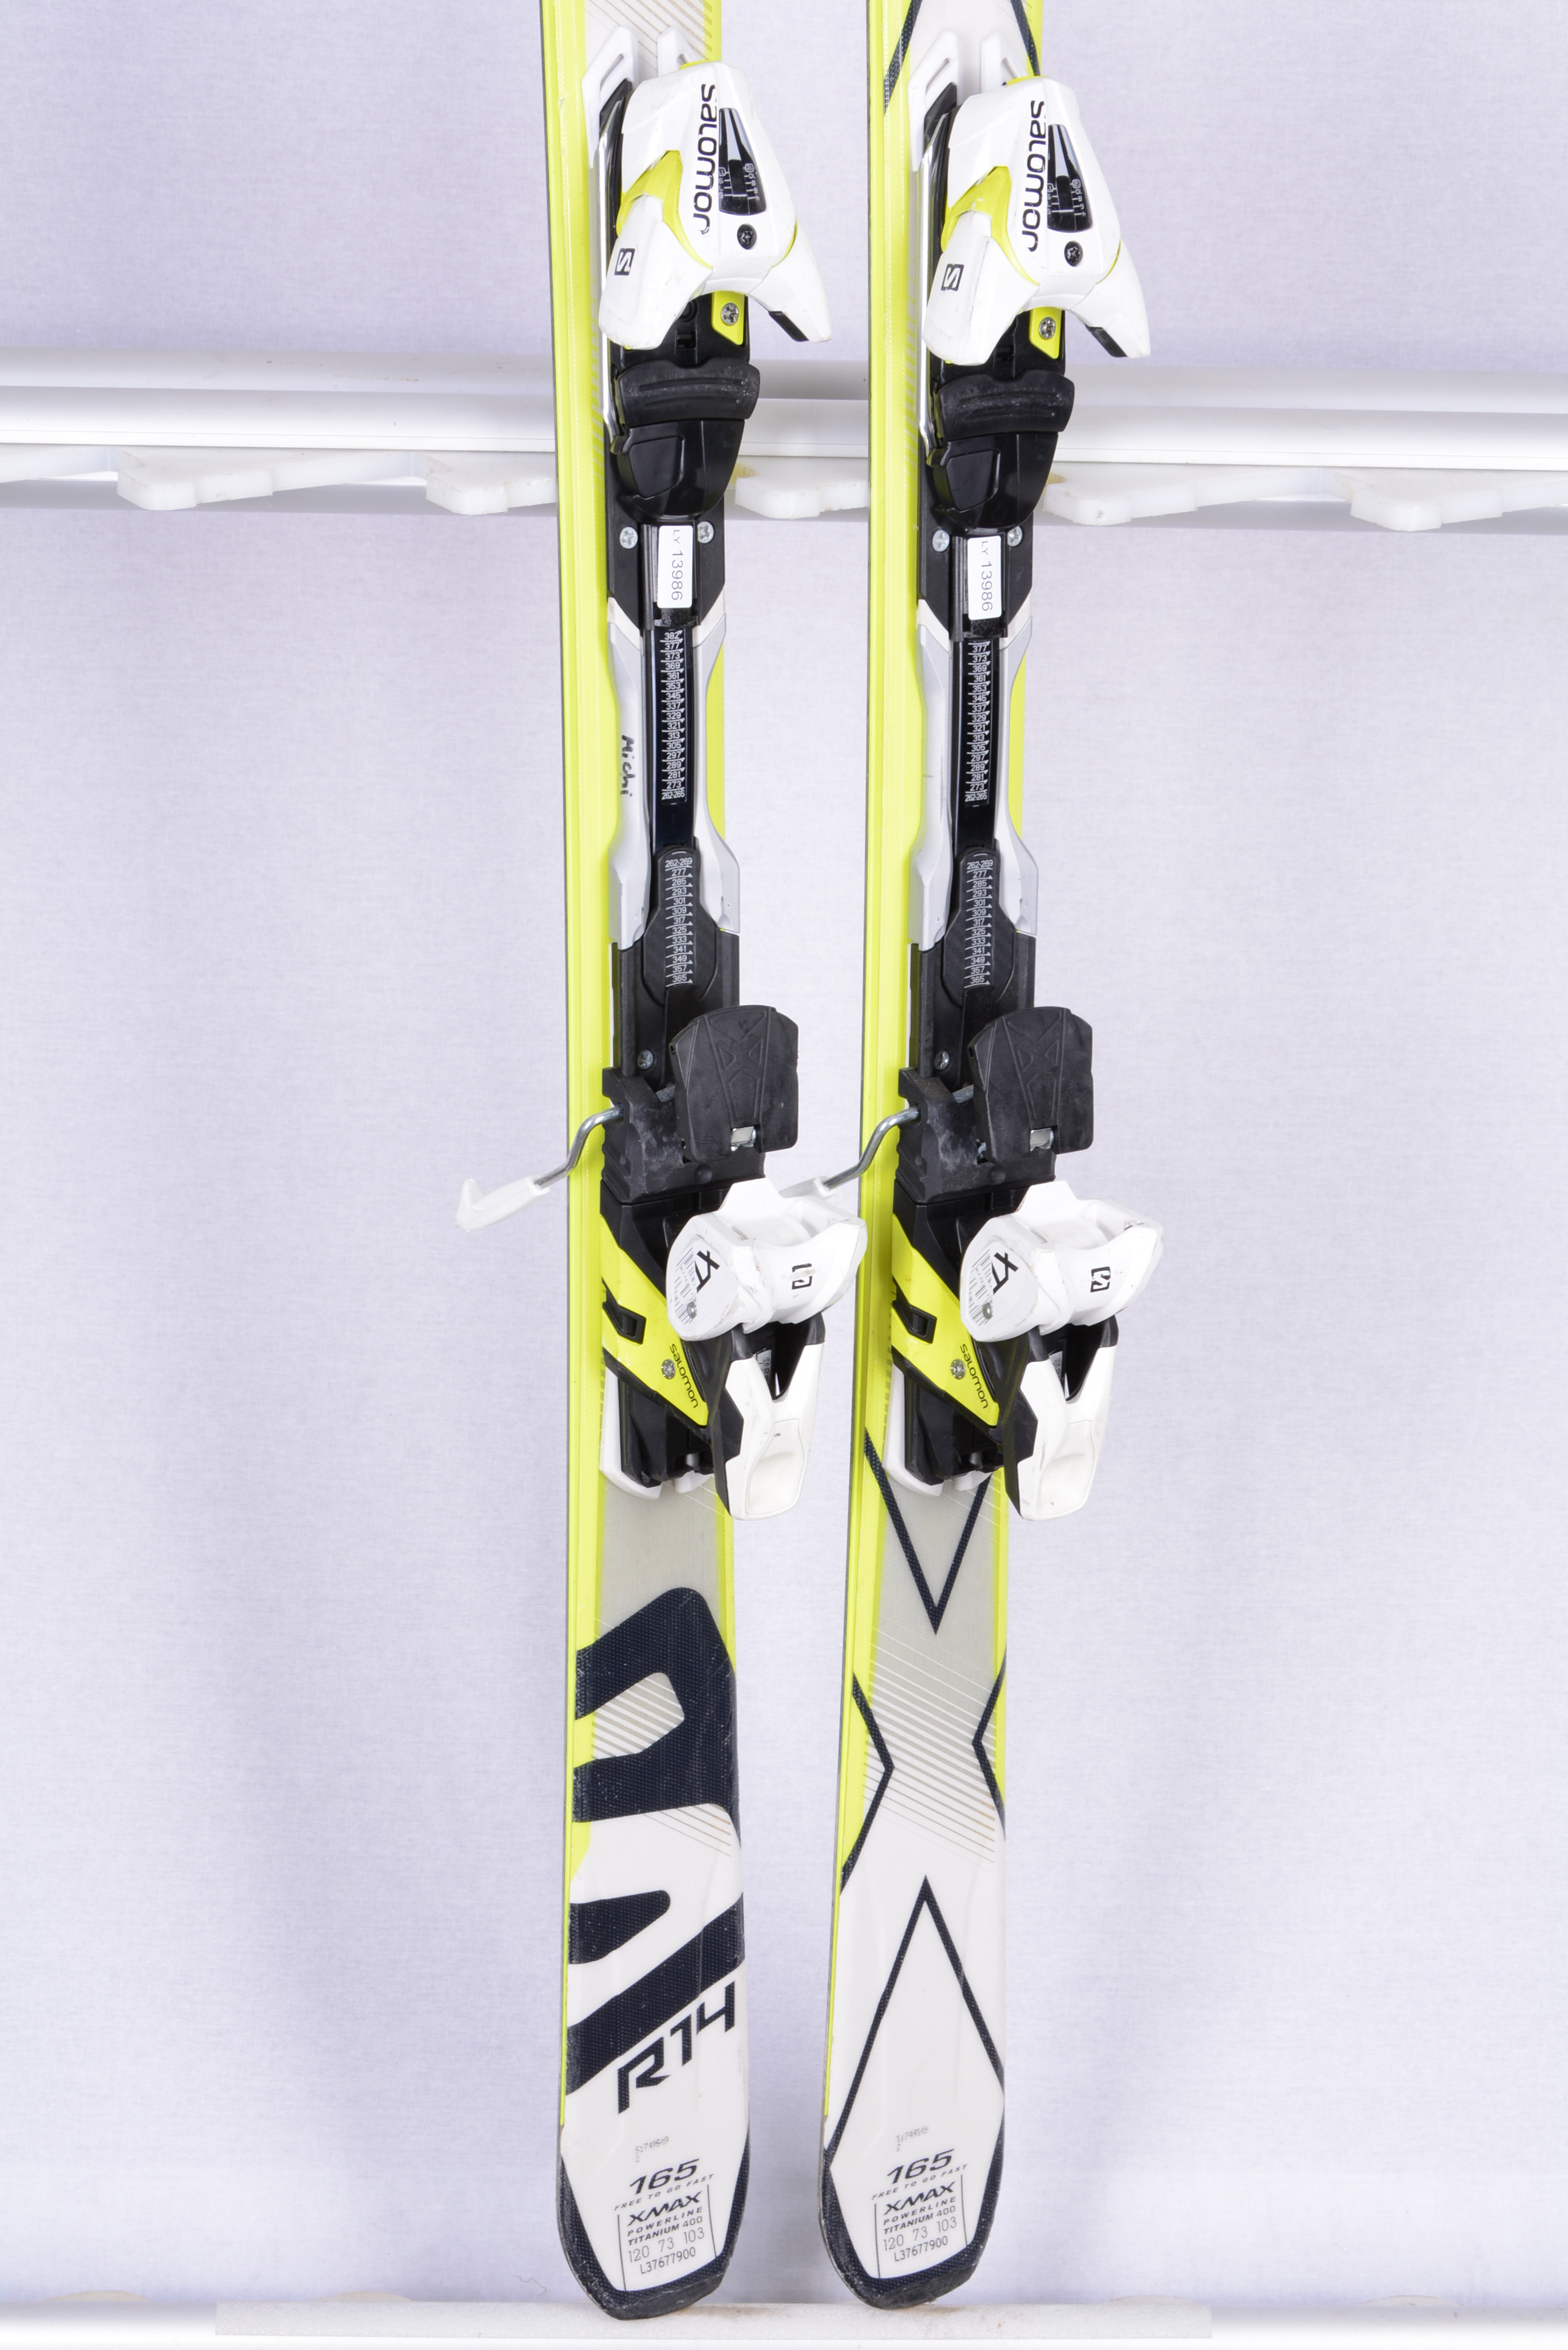 skis XMAX X10, Powerline carbon, carve rocker, Ti Backbone + 12 - Mardosport.com